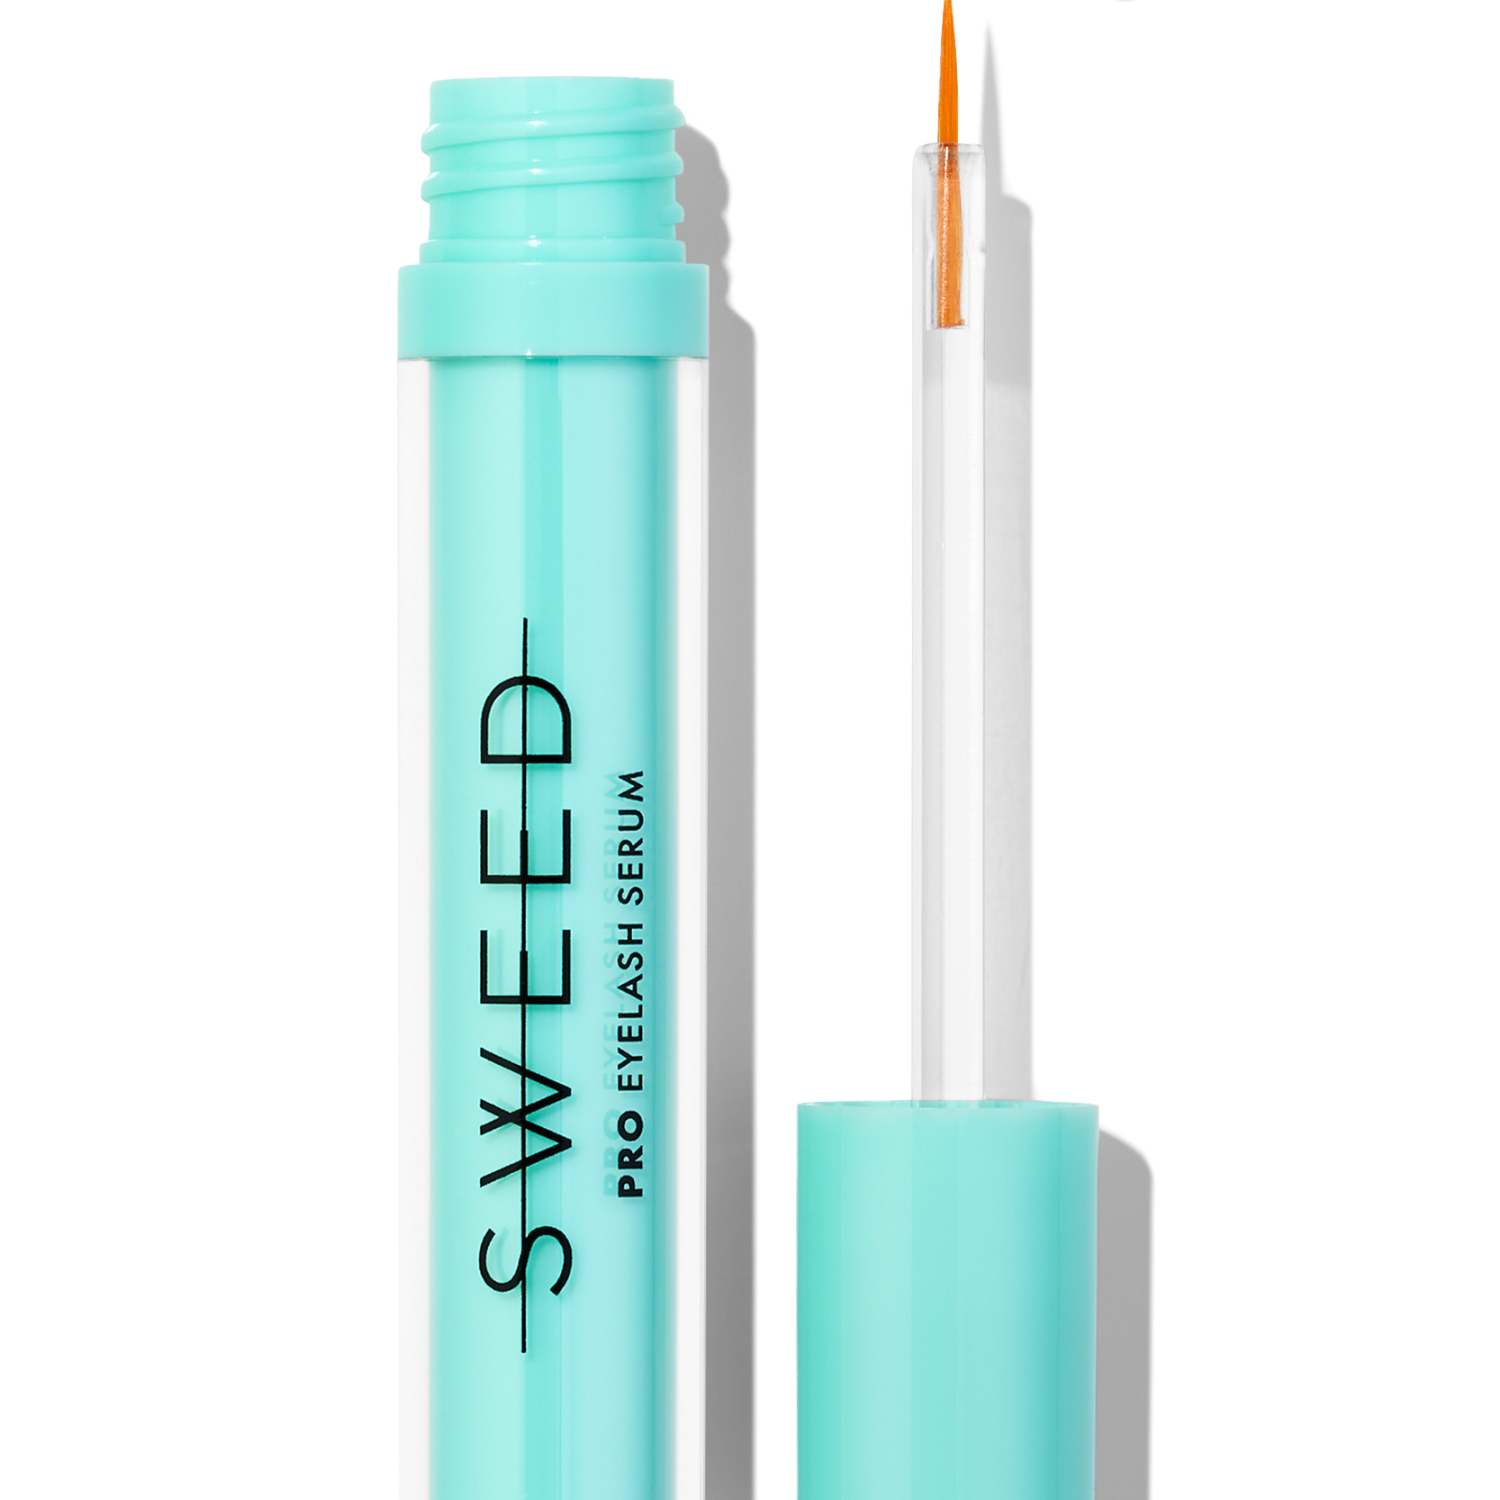 
  
  SWEED Pro Eyelash Growth Serum
  
